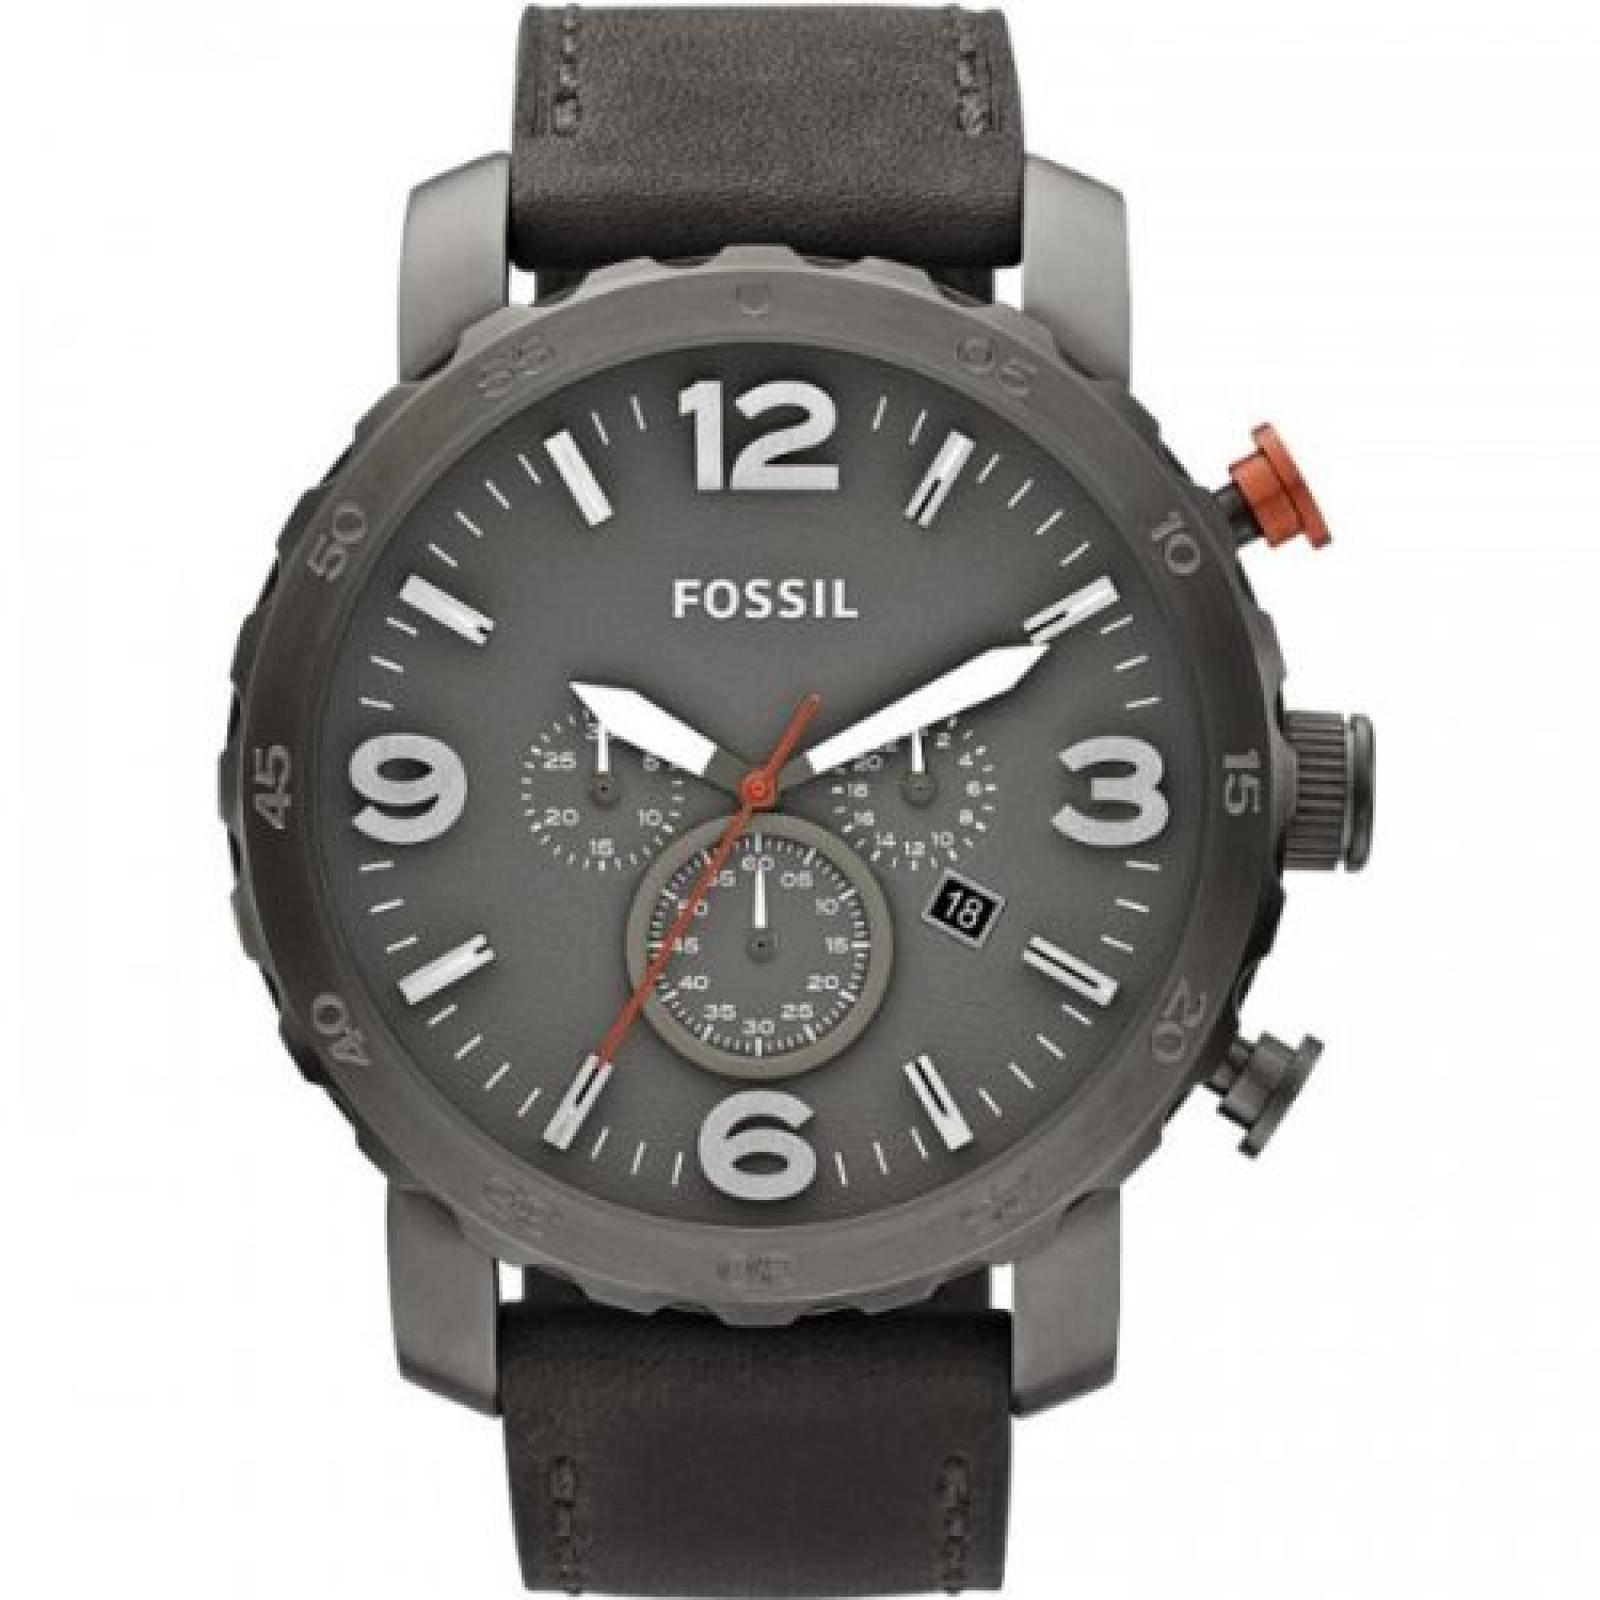 Fossil Herren-Armbanduhr XL Analog Quarz Leder JR1419 